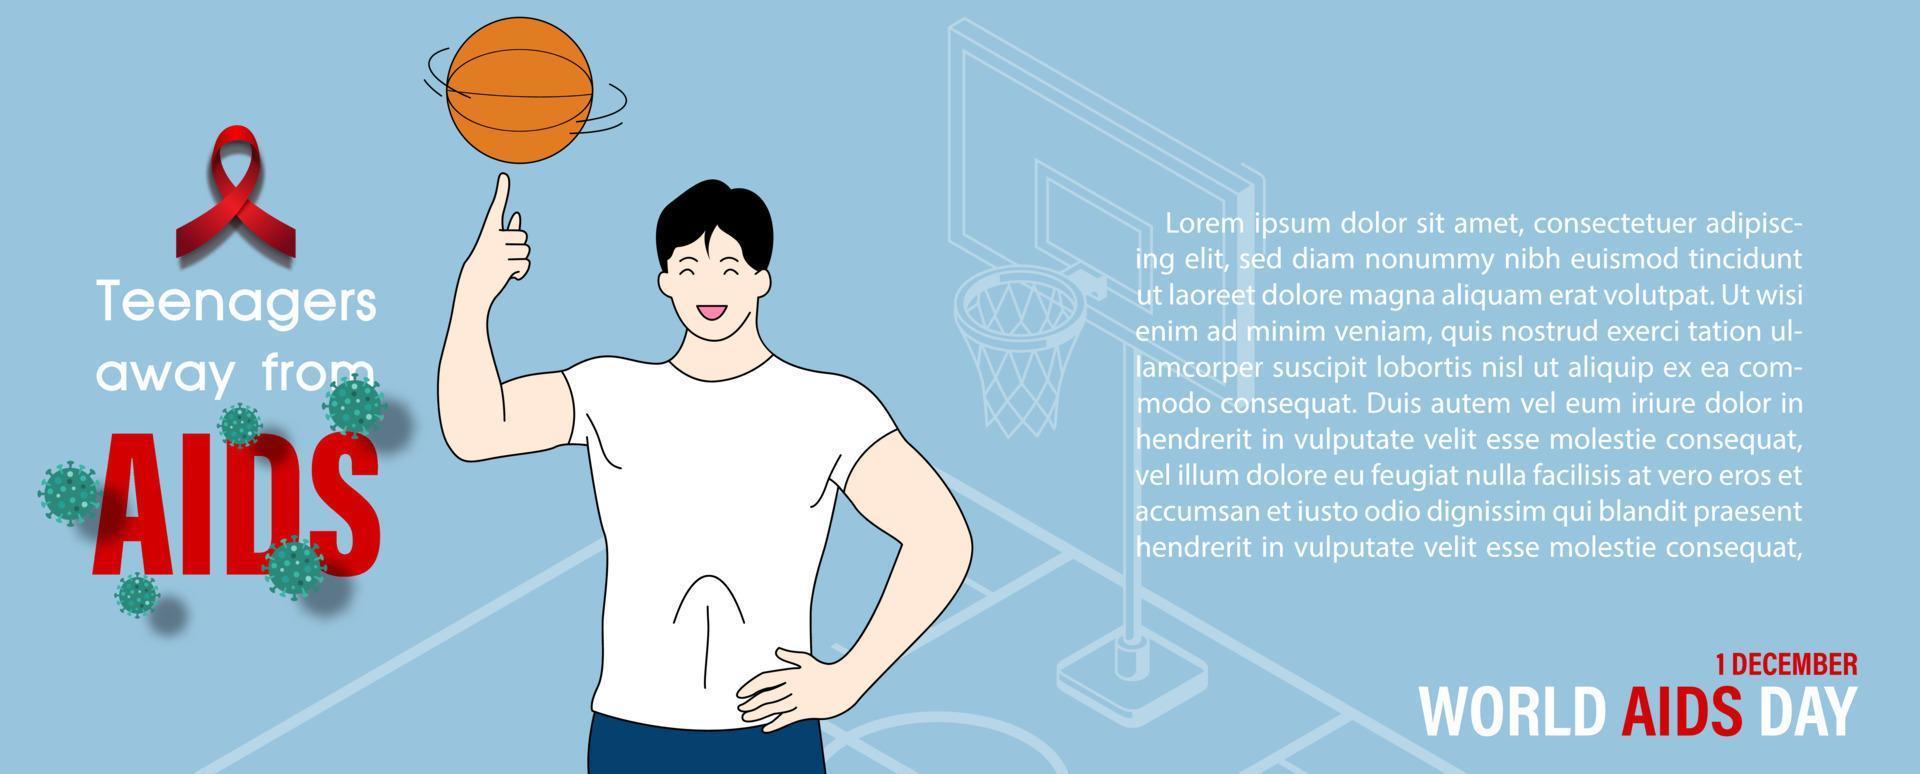 adolescents en personnage de dessin animé jouant au basket-ball avec le slogan de l'événement, des exemples de textes et des lettres de la journée mondiale du sida sur le terrain de basket et sur fond bleu. vecteur